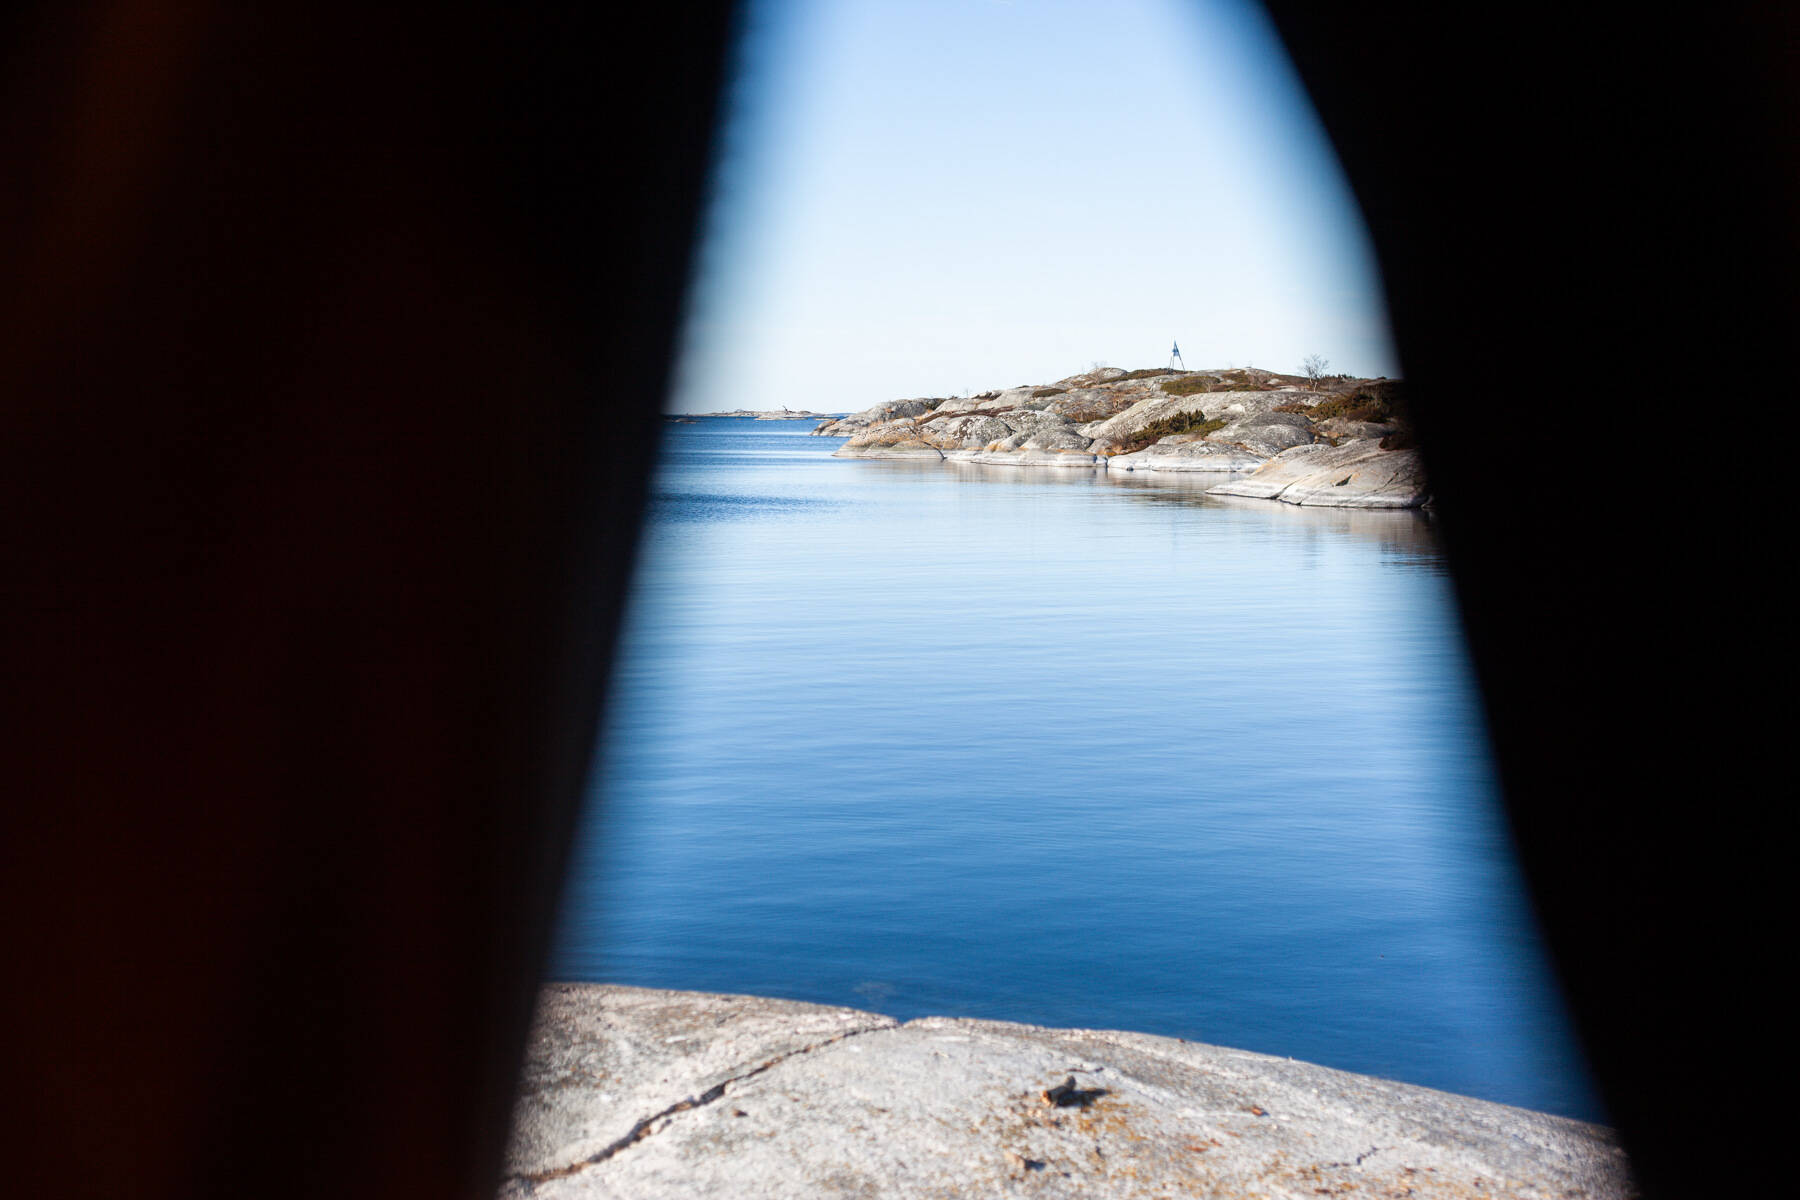 Poranny widok z namiotu Szwecja